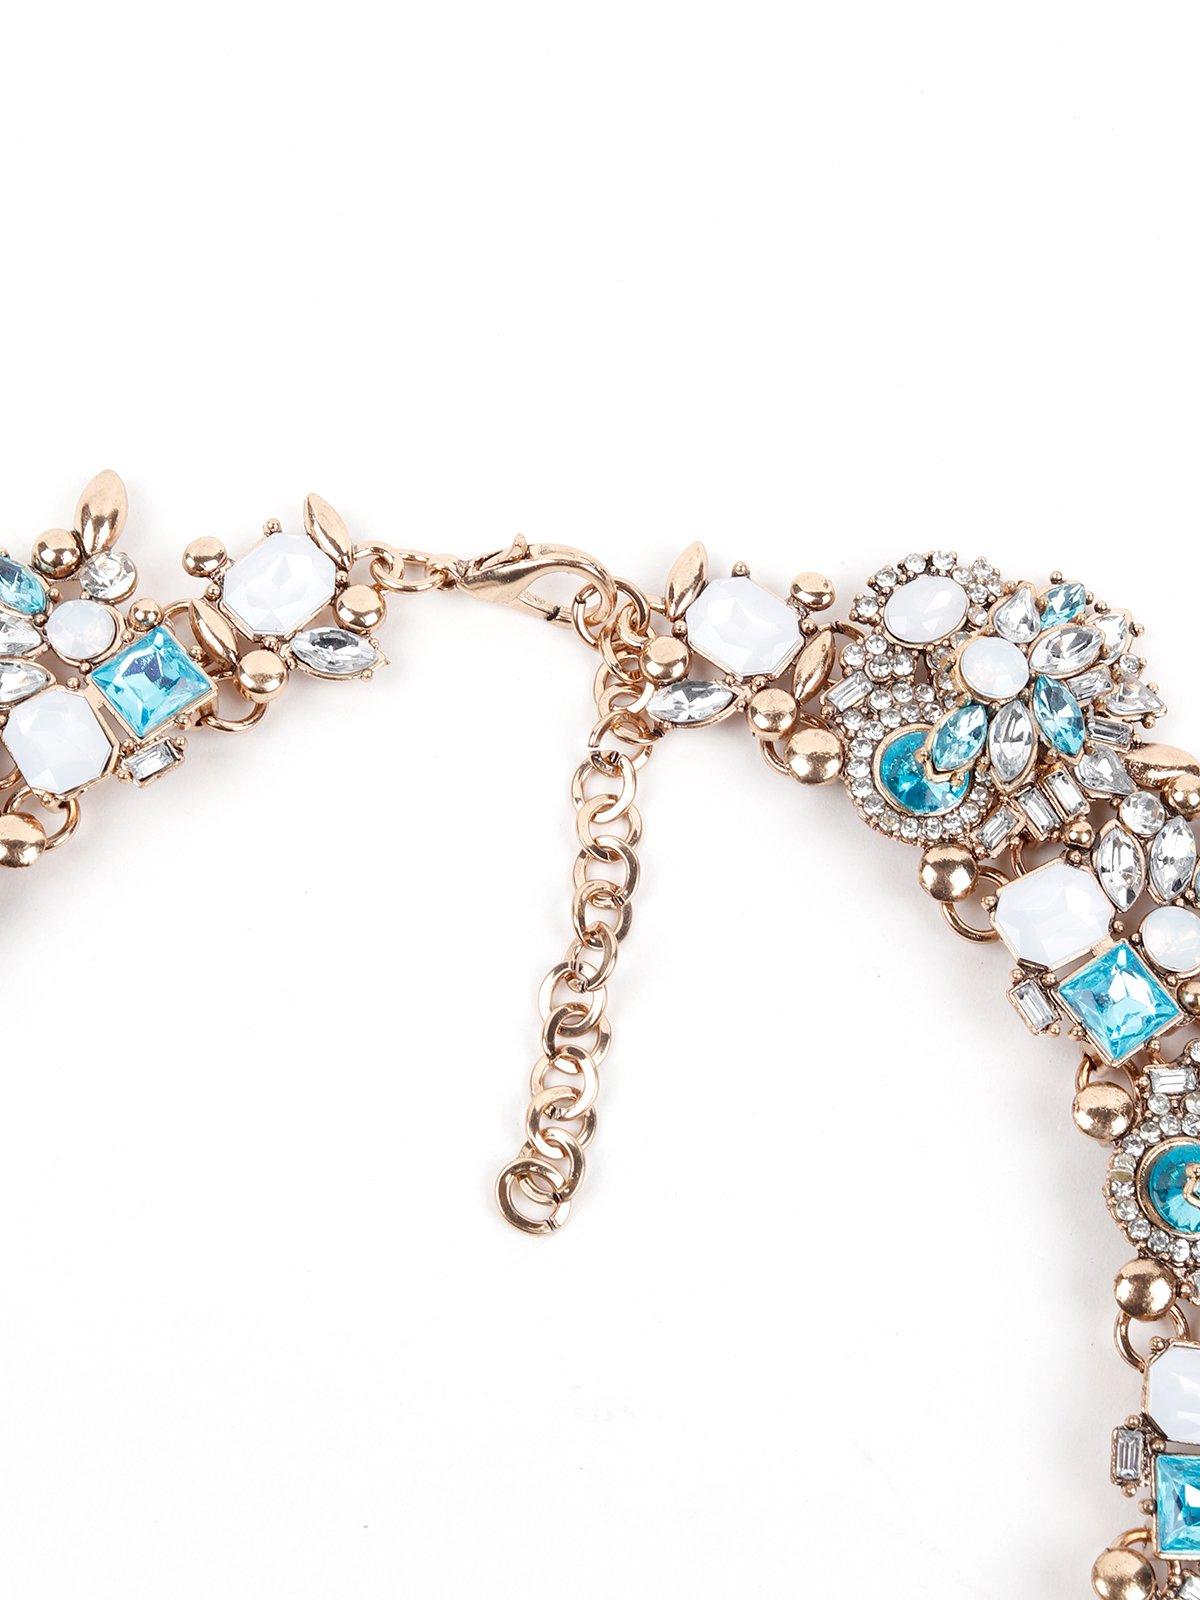 Women's Elegant Blue Crystal Statement Necklace - Odette